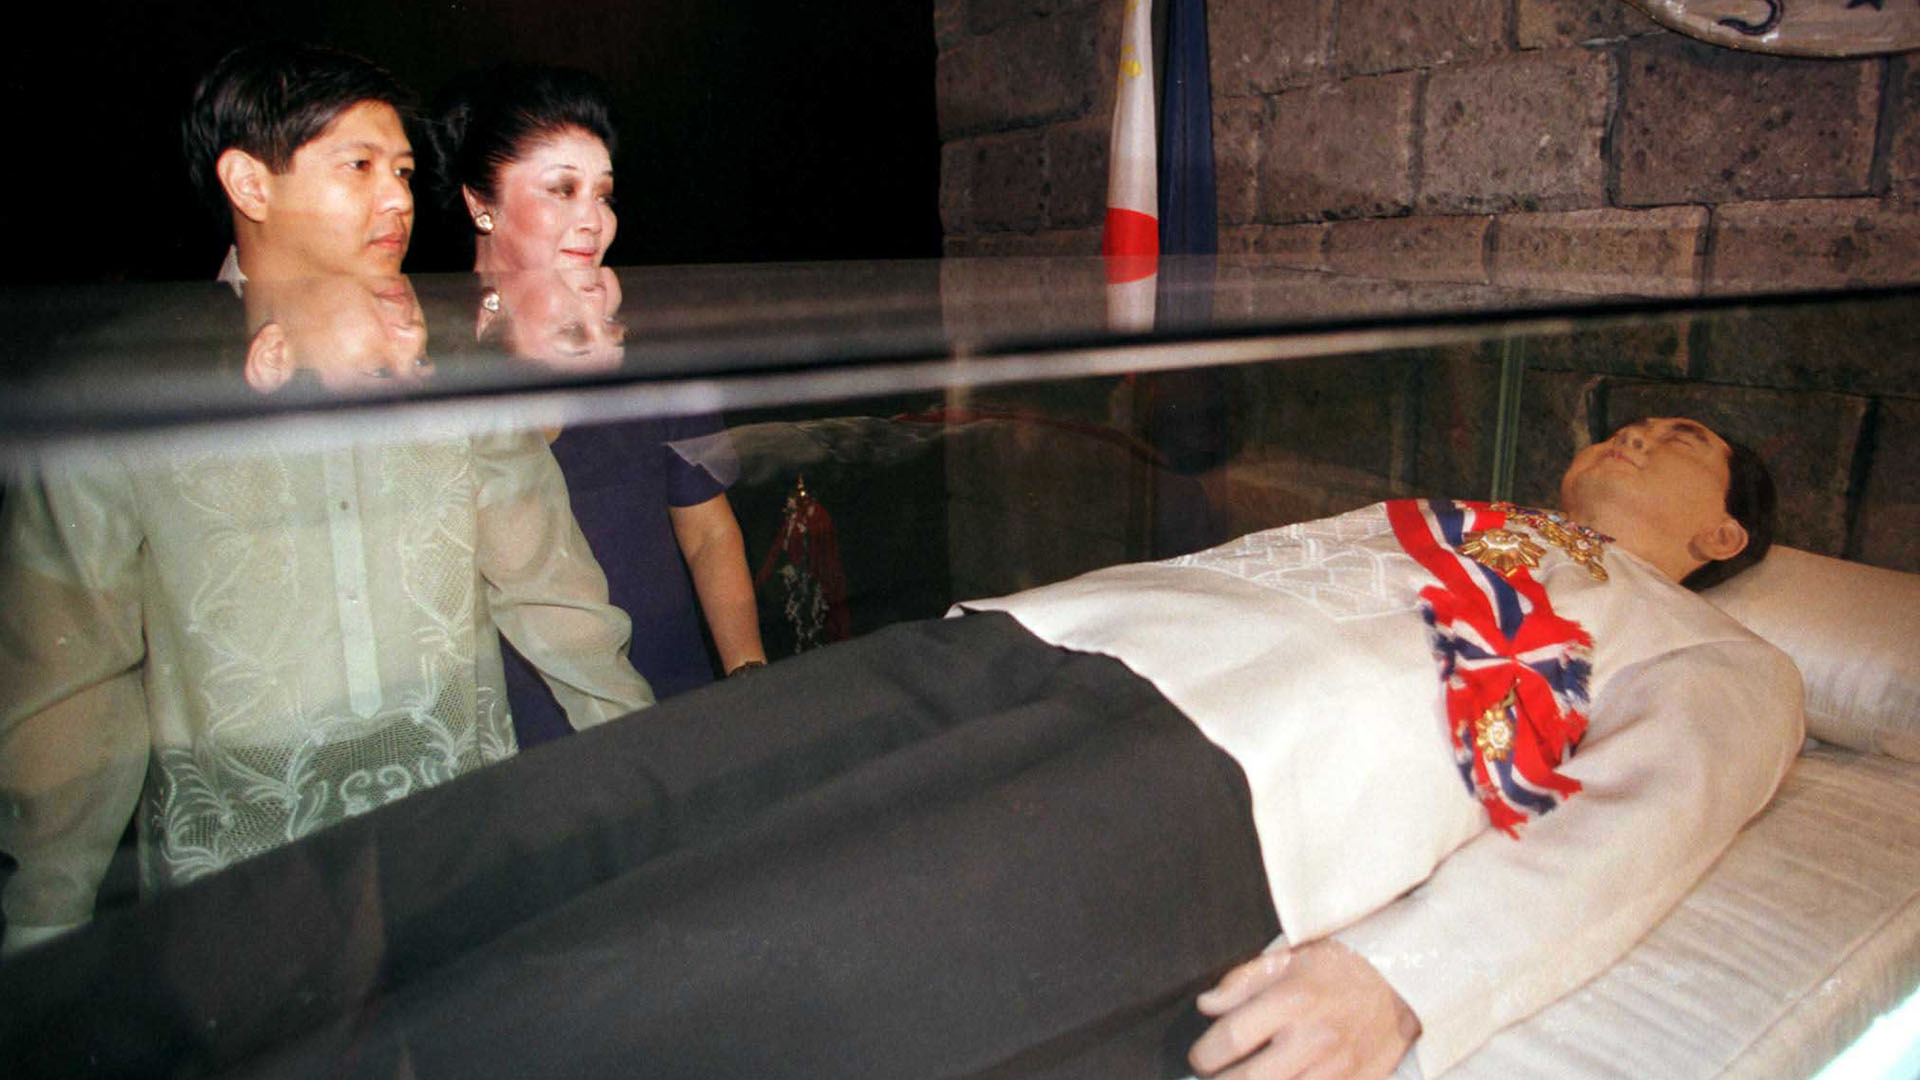 Bongbong Marcos y su madre Imelda ante el cadáver embalsamado de su padre que una década después fue repatriado a Filipinas. Ferdinand Marcos gobernó Filipinas durante más de veinte años. Se calcula que su patrimonio era de más de 10.000 millones de dólares.

